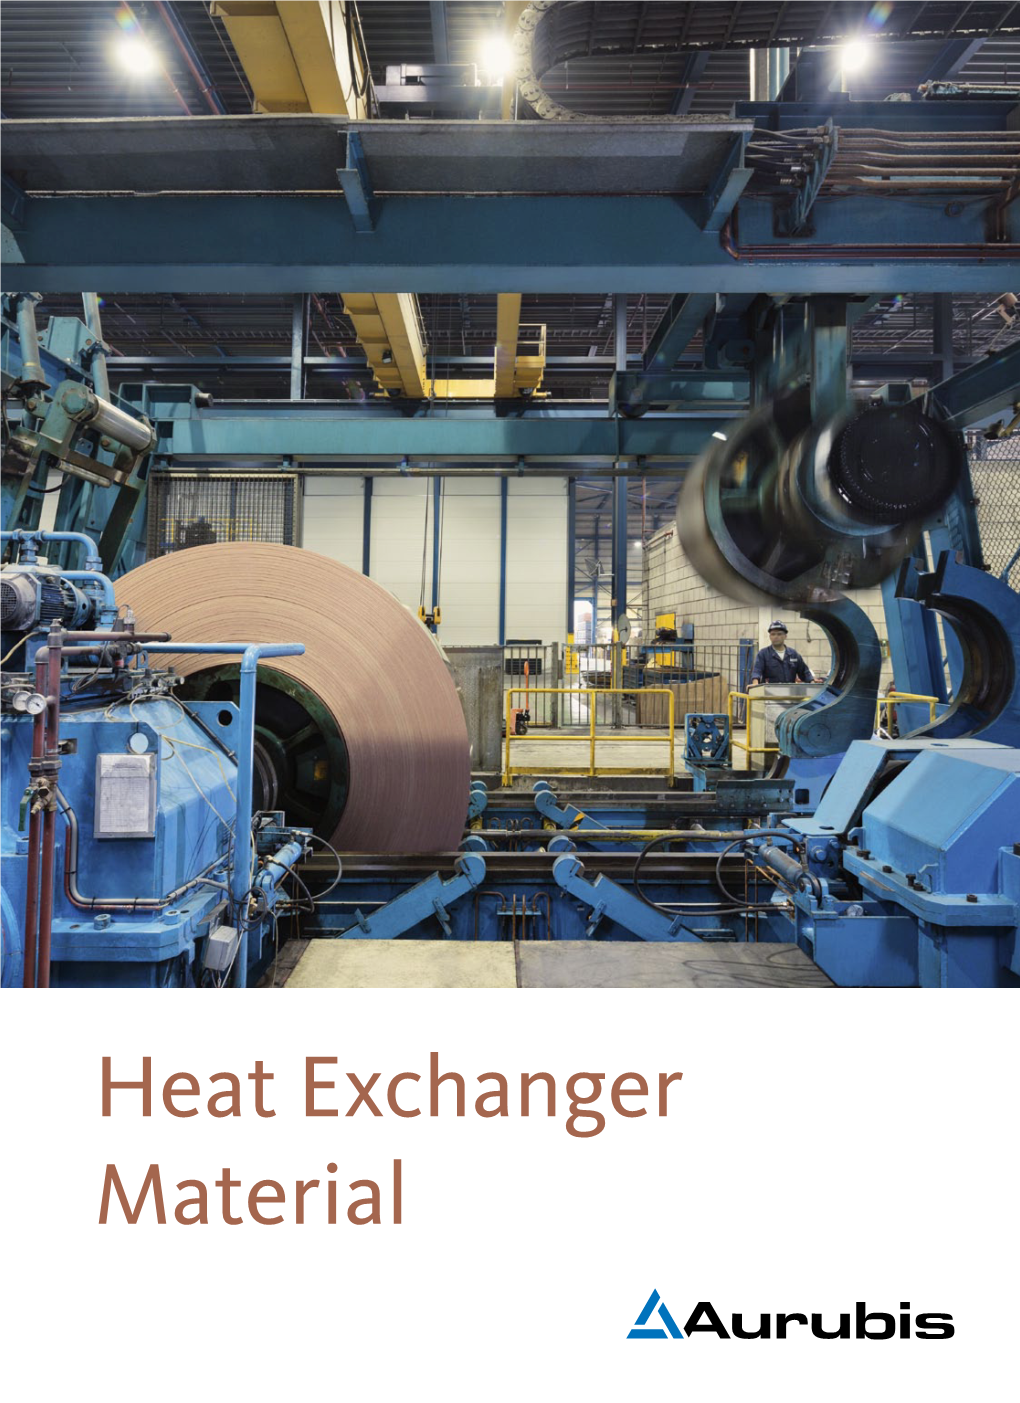 Heat Exchanger Material Facts & Figures Aurubis Heat Exchanger Material